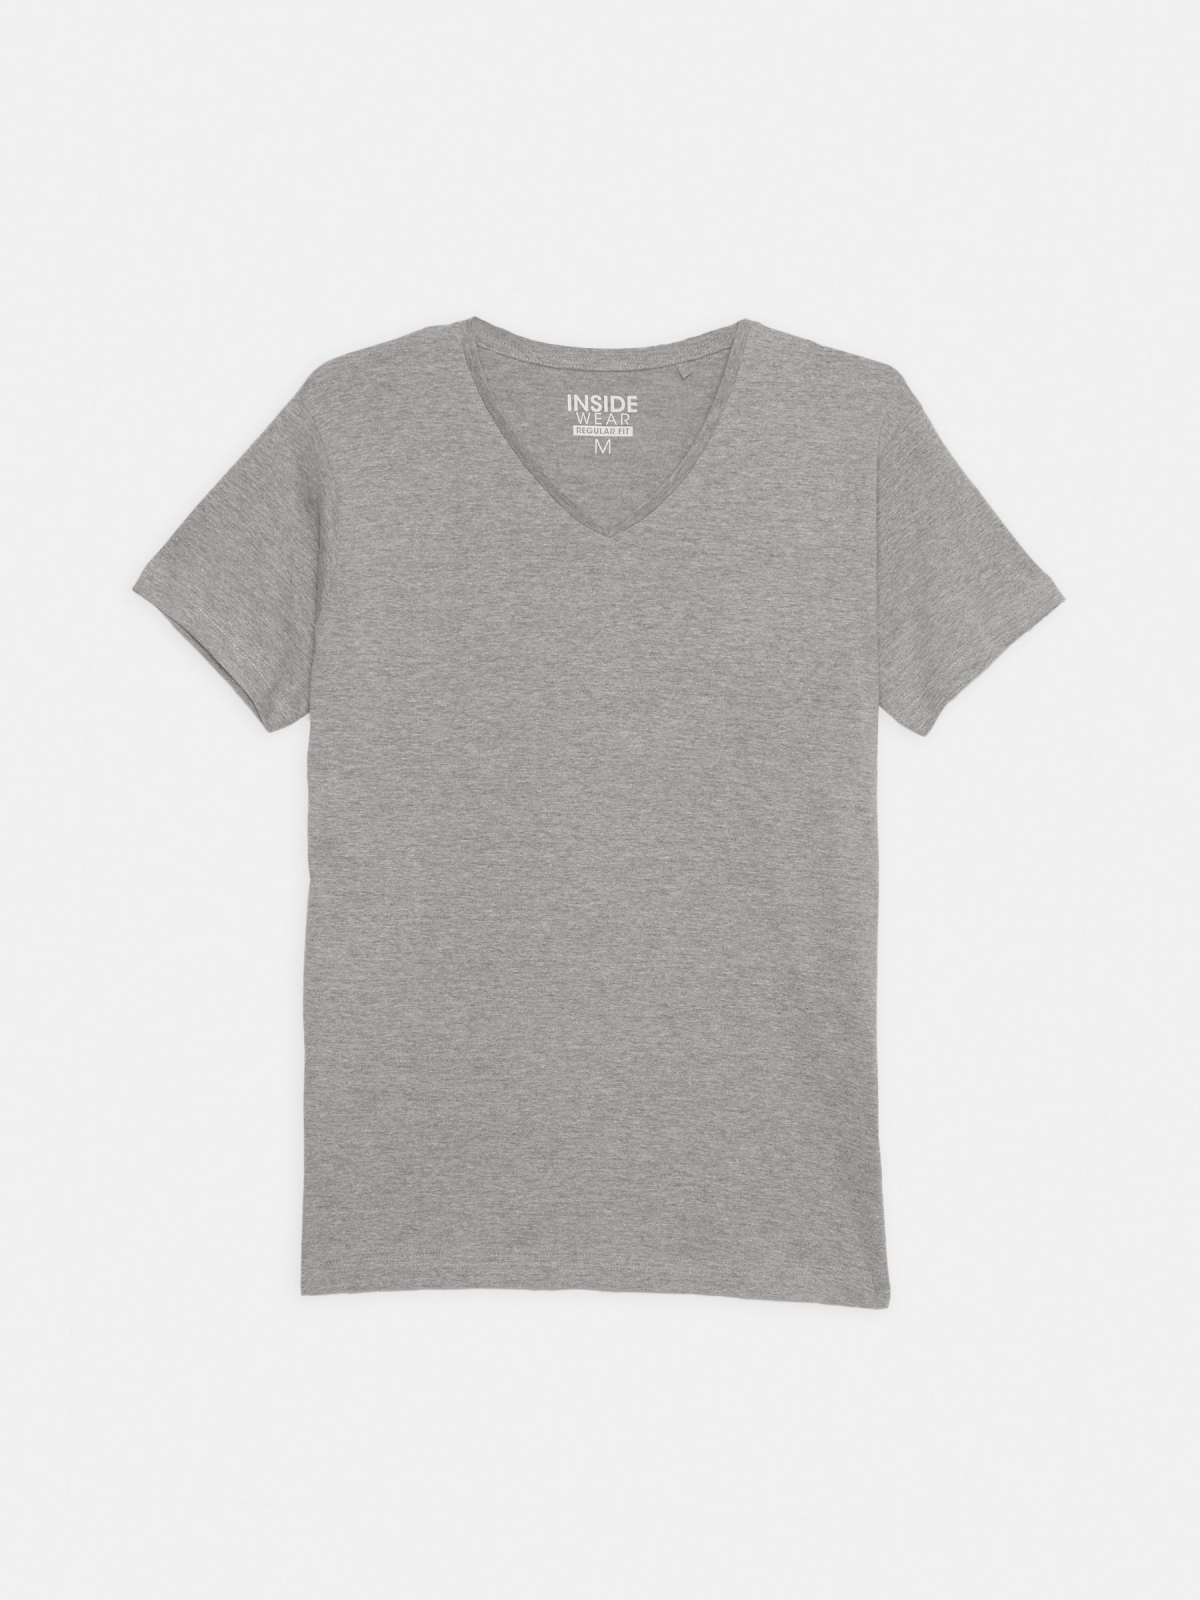  Camiseta básica cuello pico gris